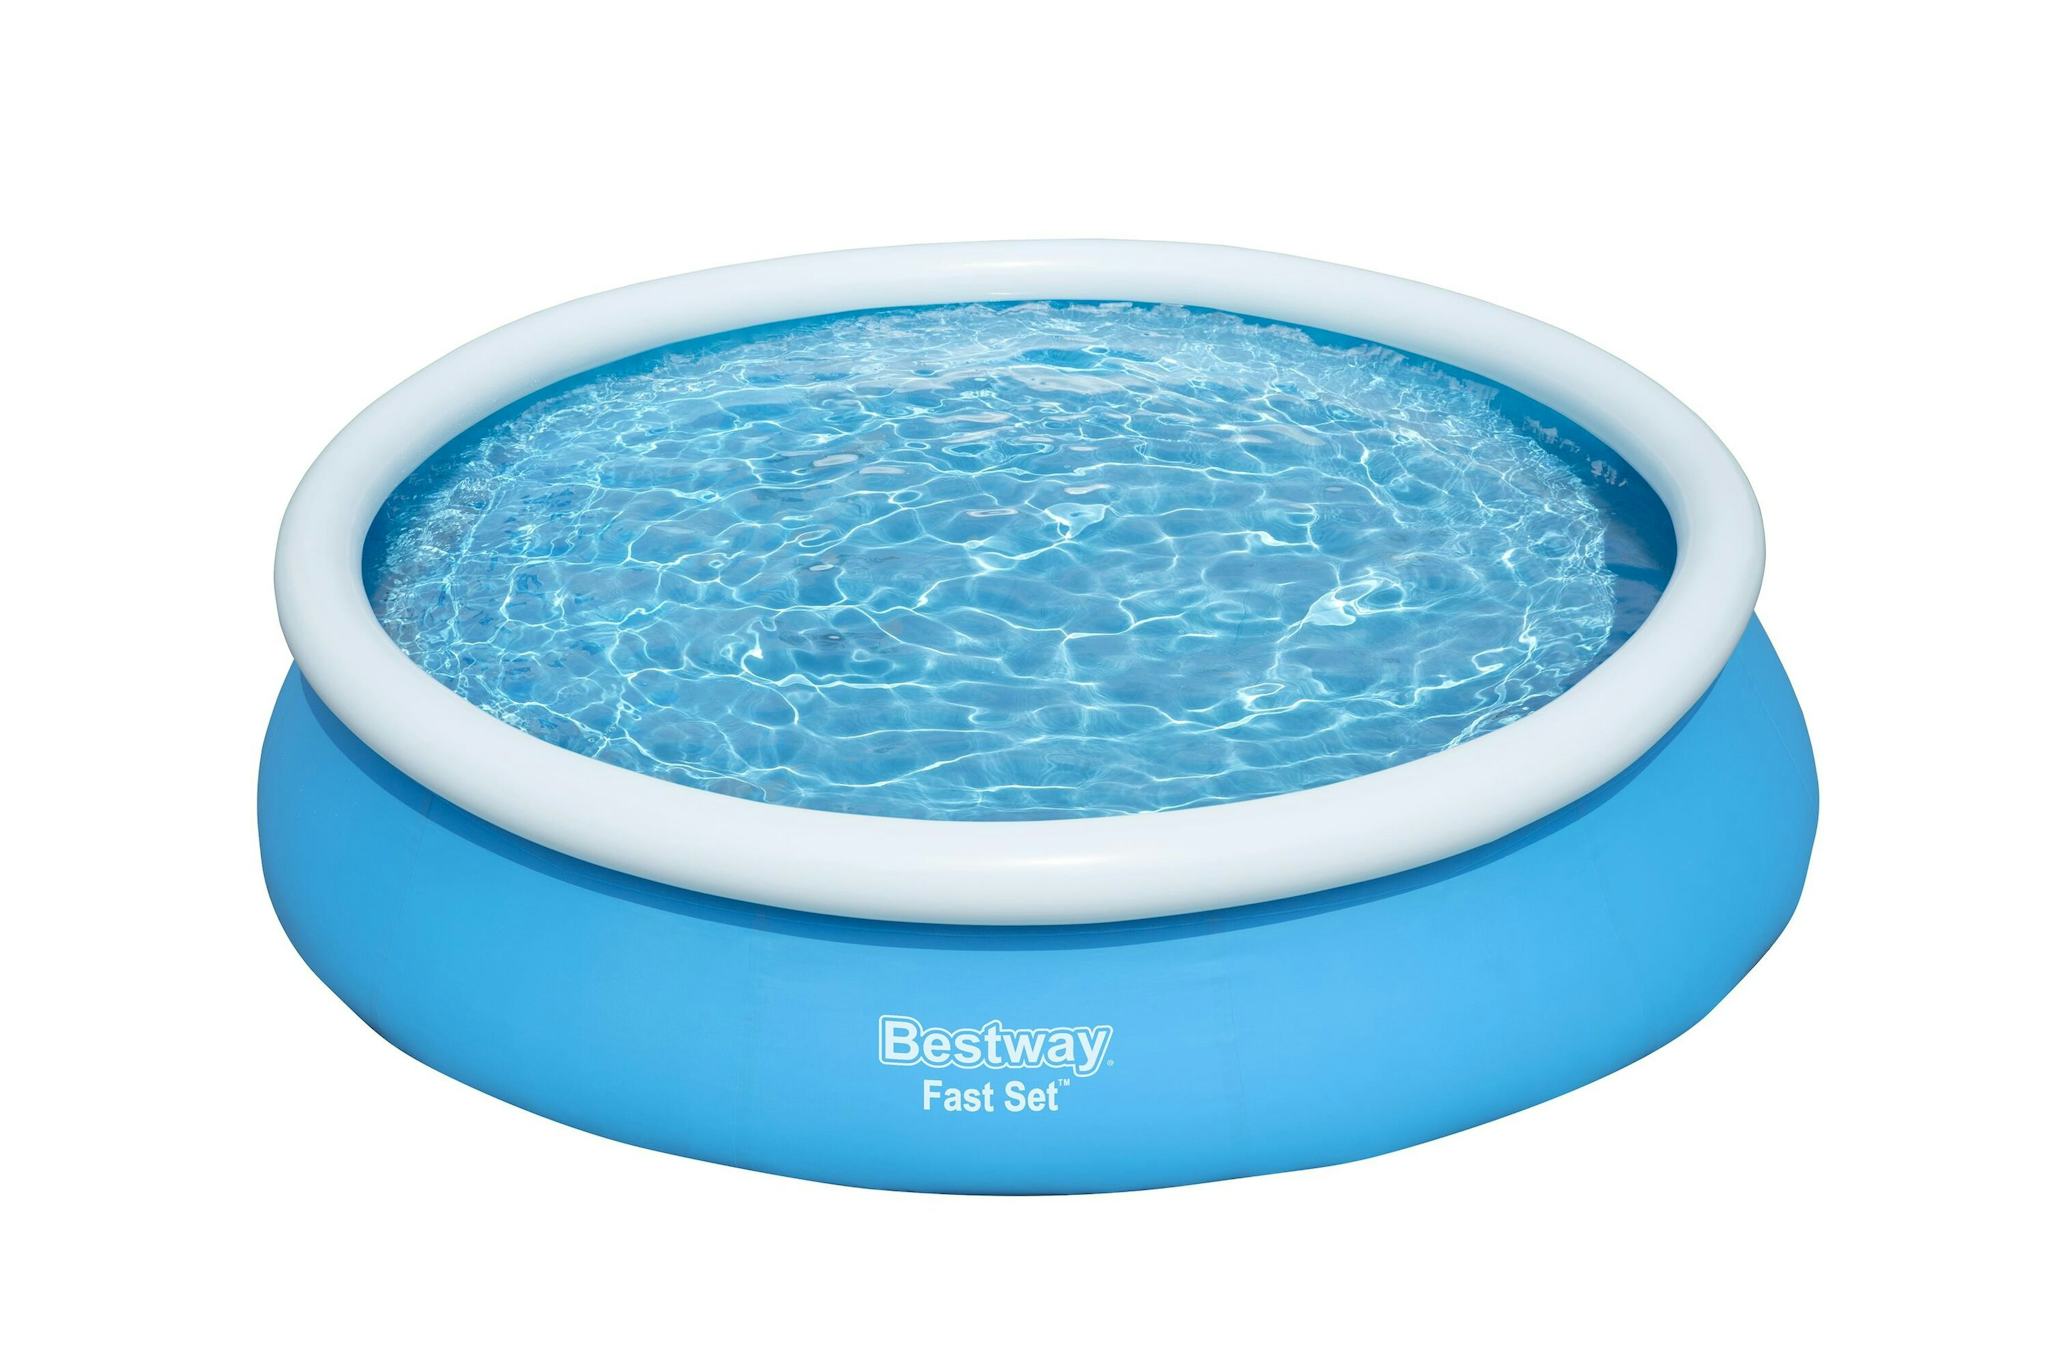 Bovengronds zwembad Fast Set bovengronds rond opblaasbaar zwembad van 366x76 cm blauw Bestway 2